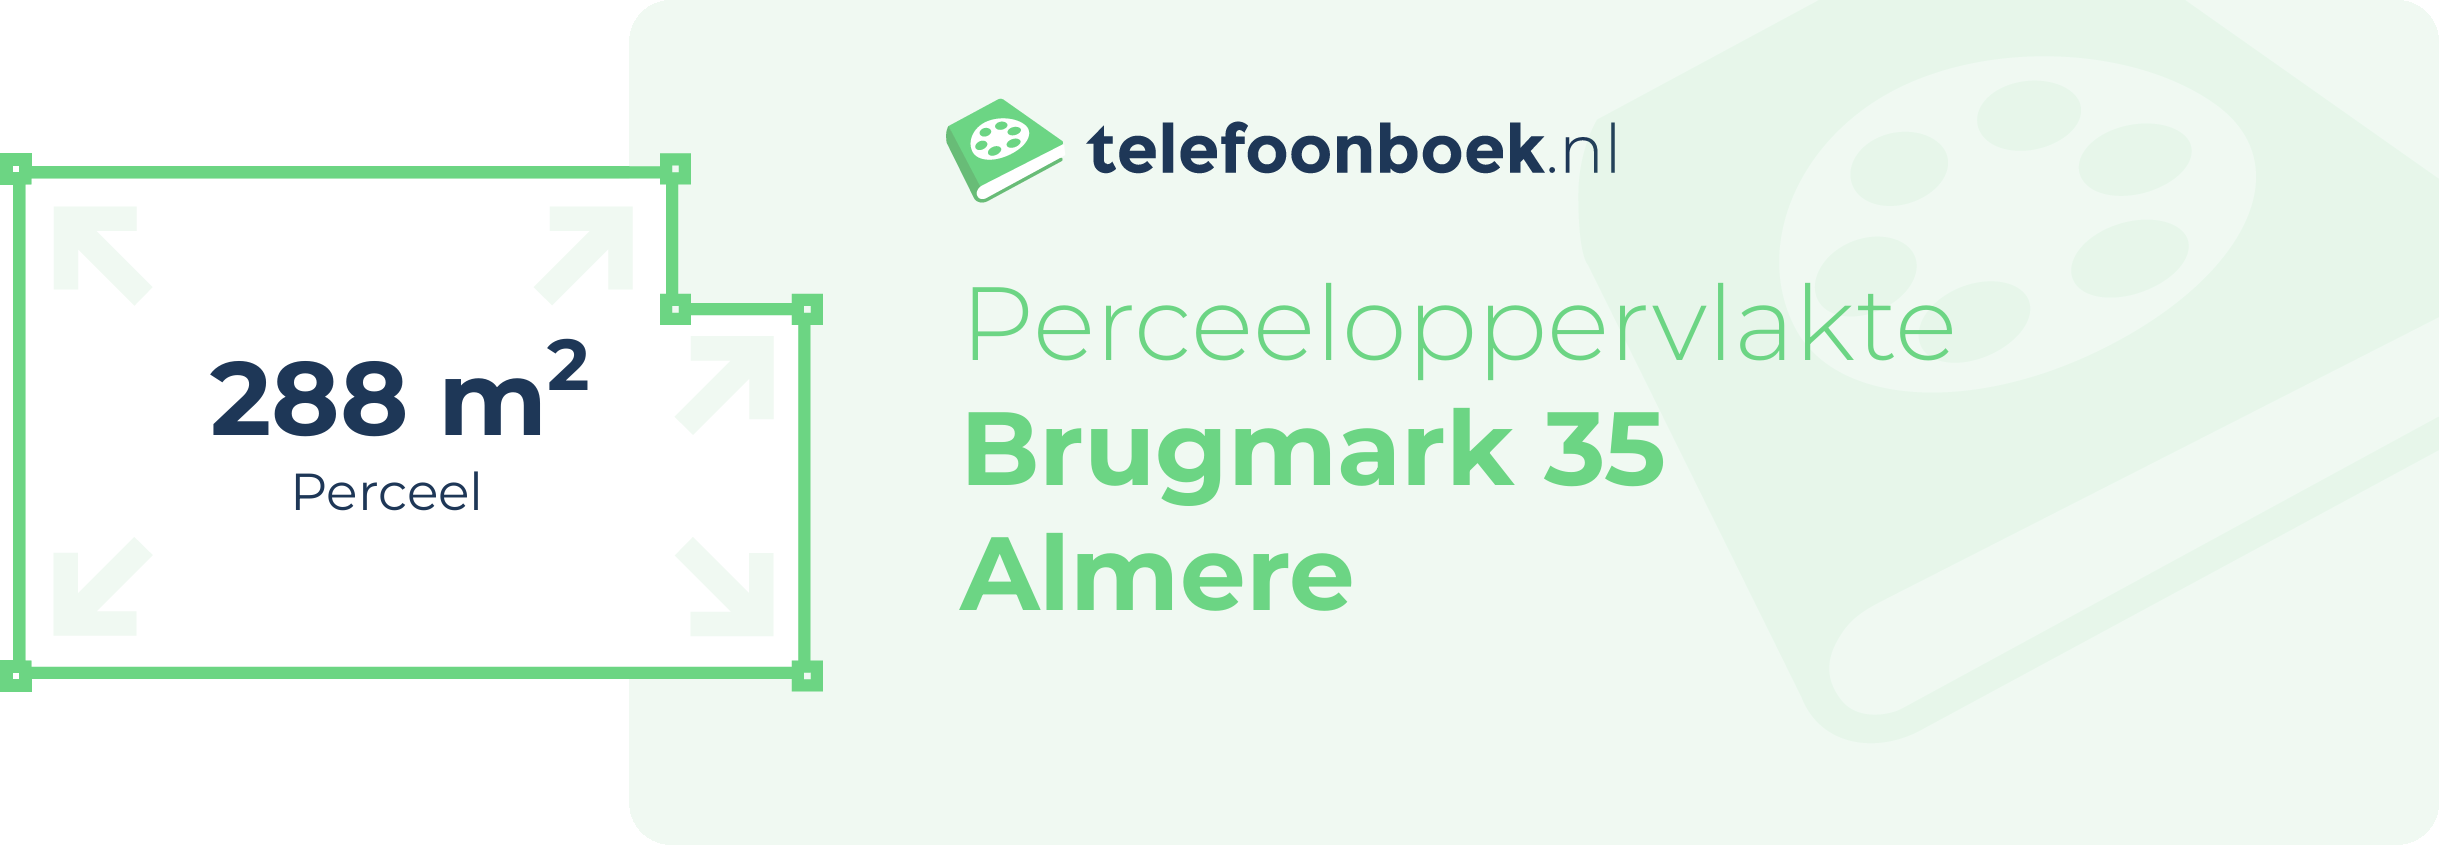 Perceeloppervlakte Brugmark 35 Almere